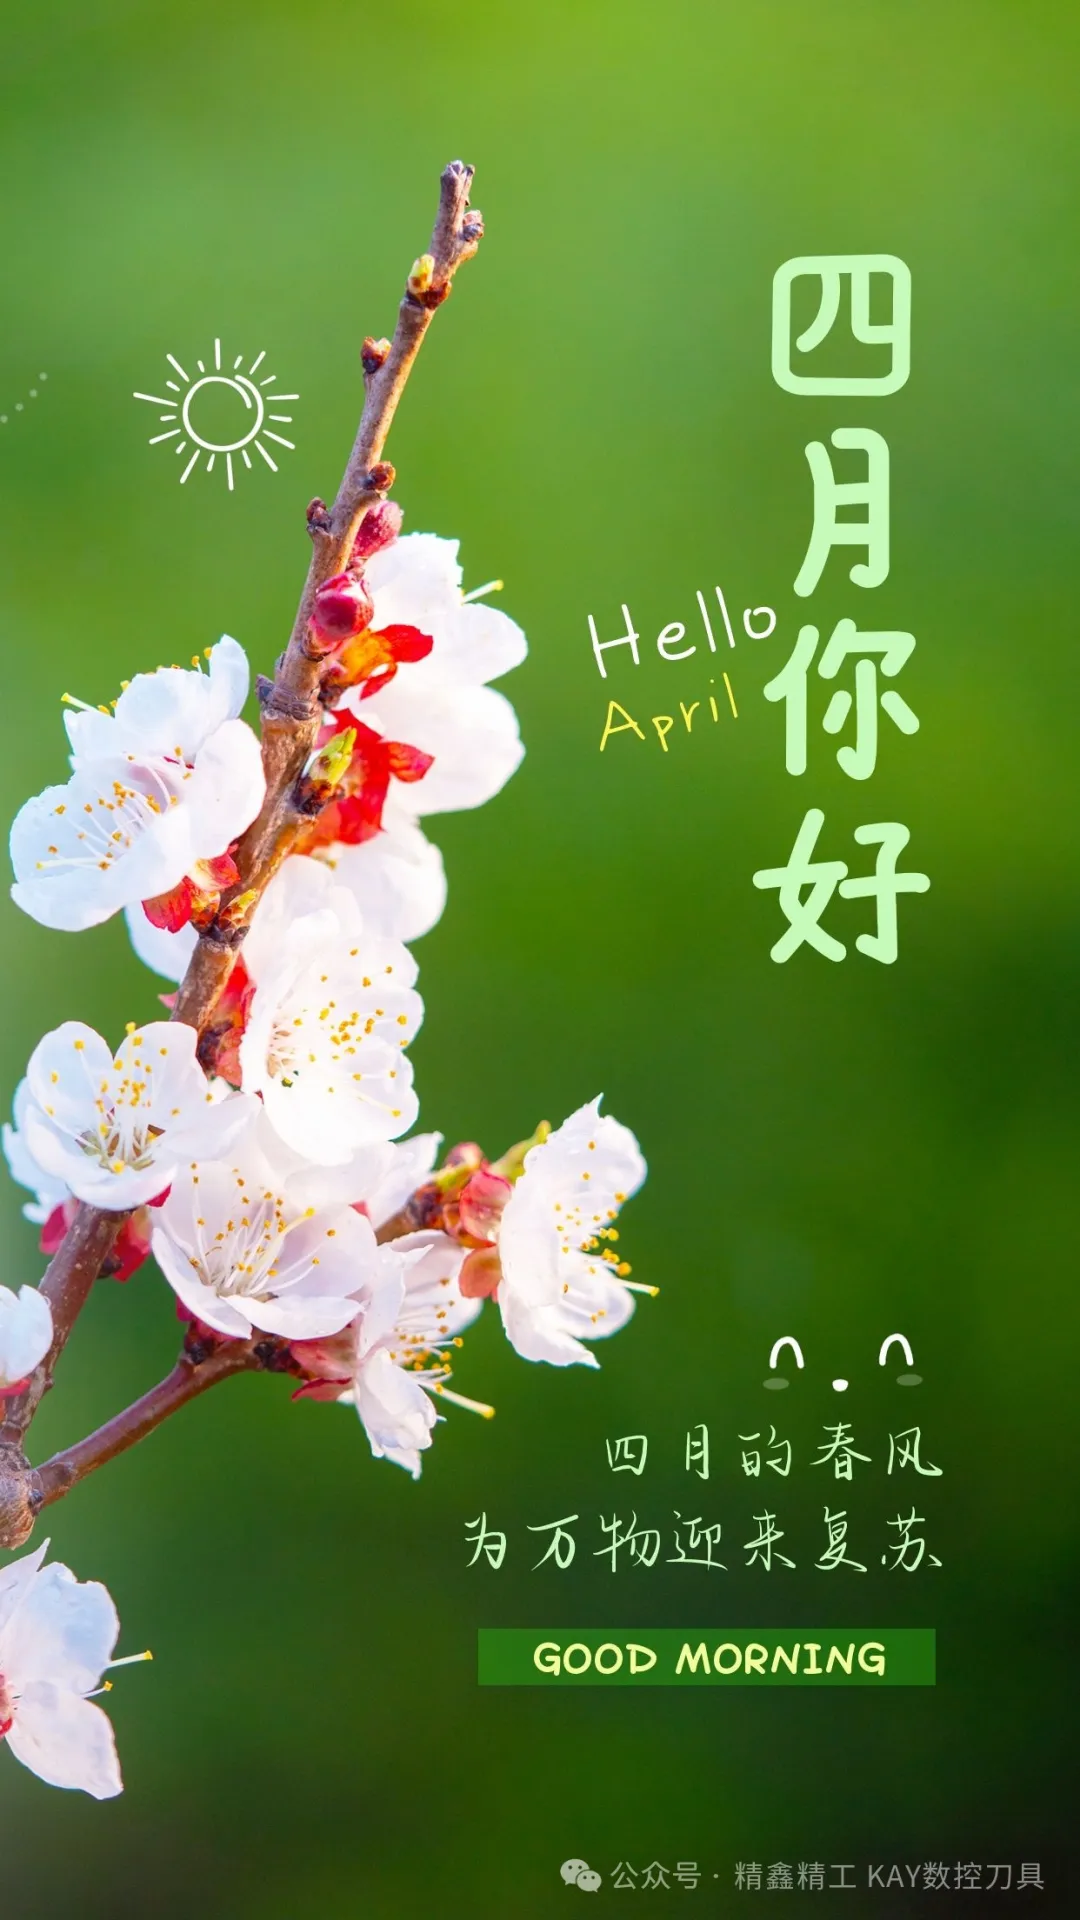 四月你好，愿春日安好，平安喜乐